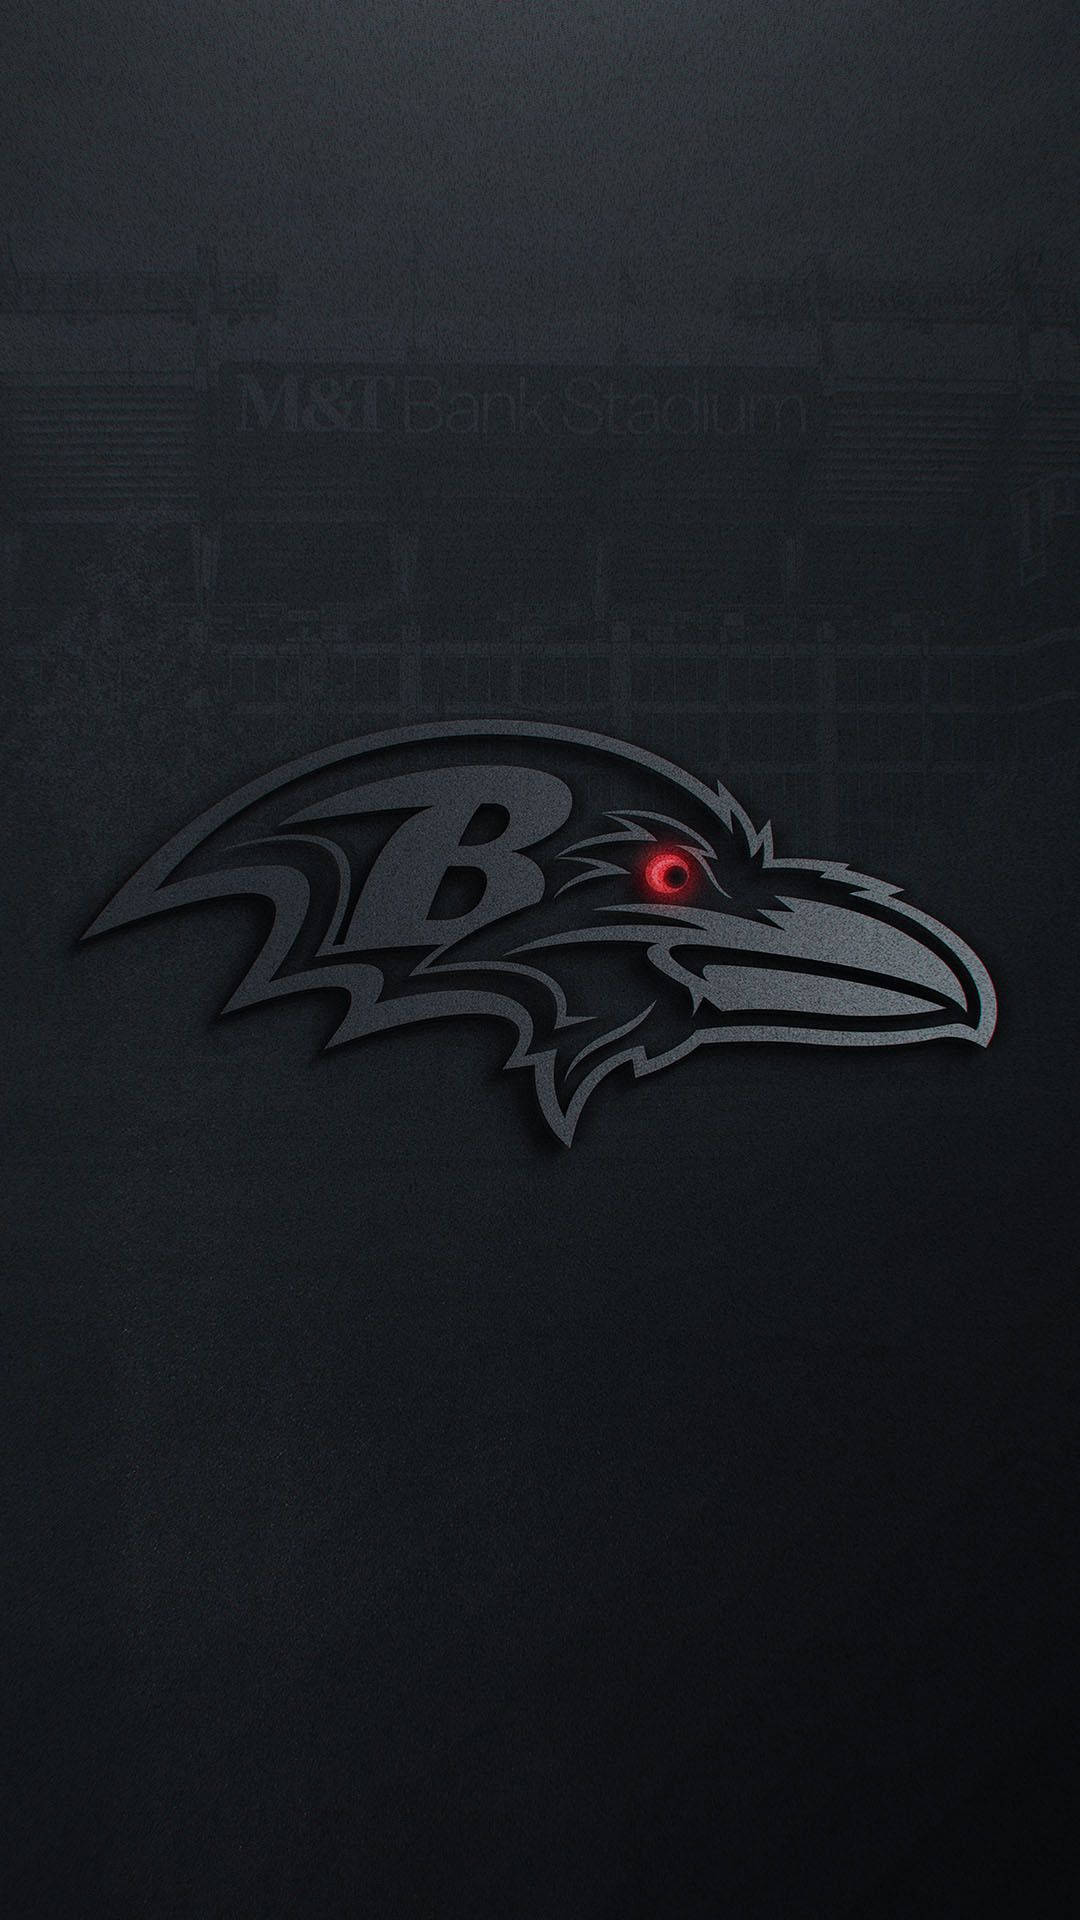 Visaupp Din Stolthet För Baltimore Ravens Genom Att Anpassa Din Iphone-bakgrund! Wallpaper